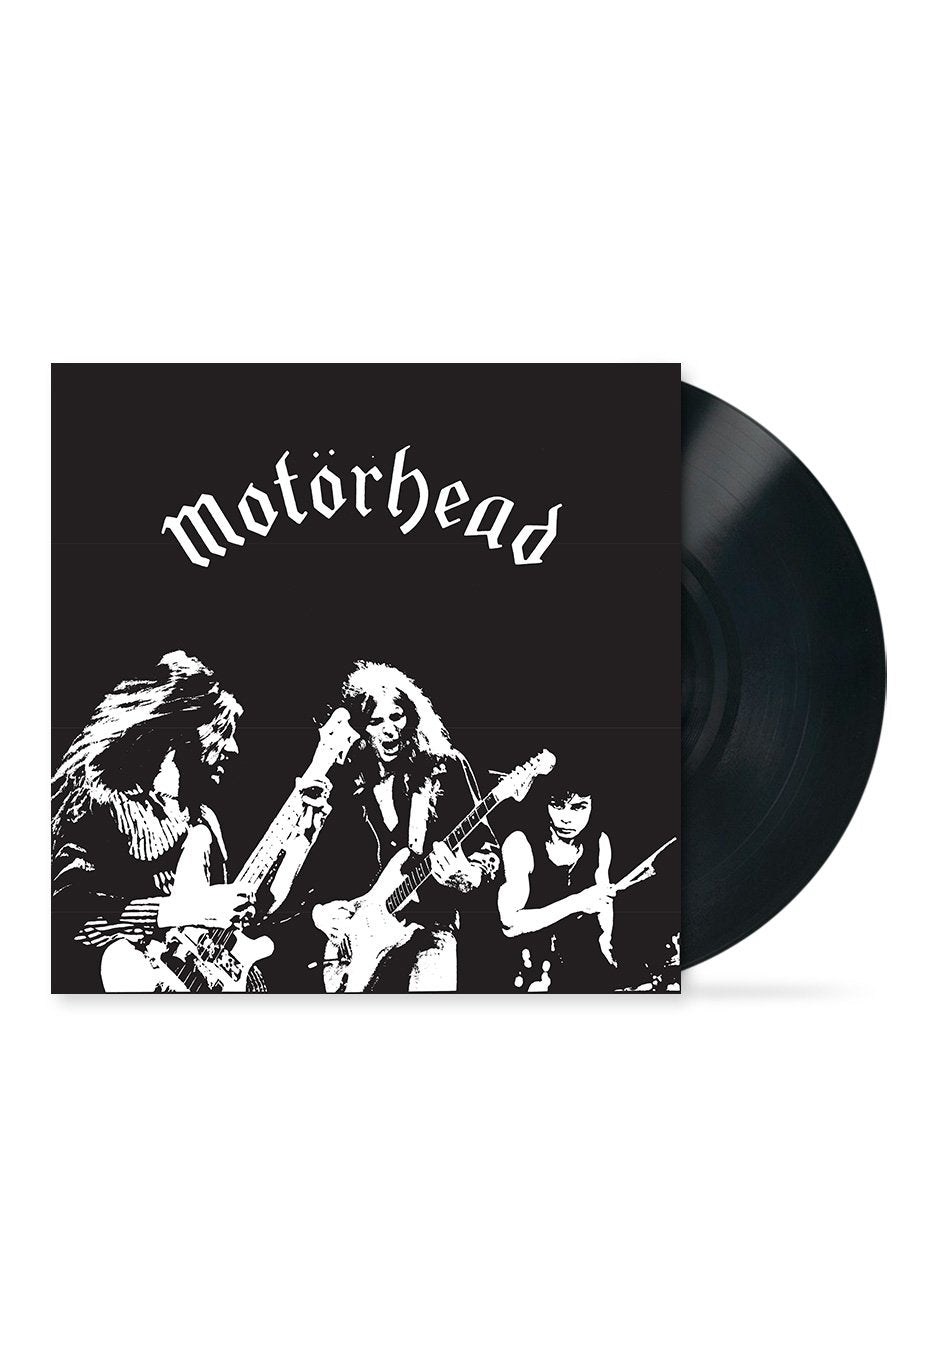 Motörhead - Motörhead / City Kids - Single Vinyl